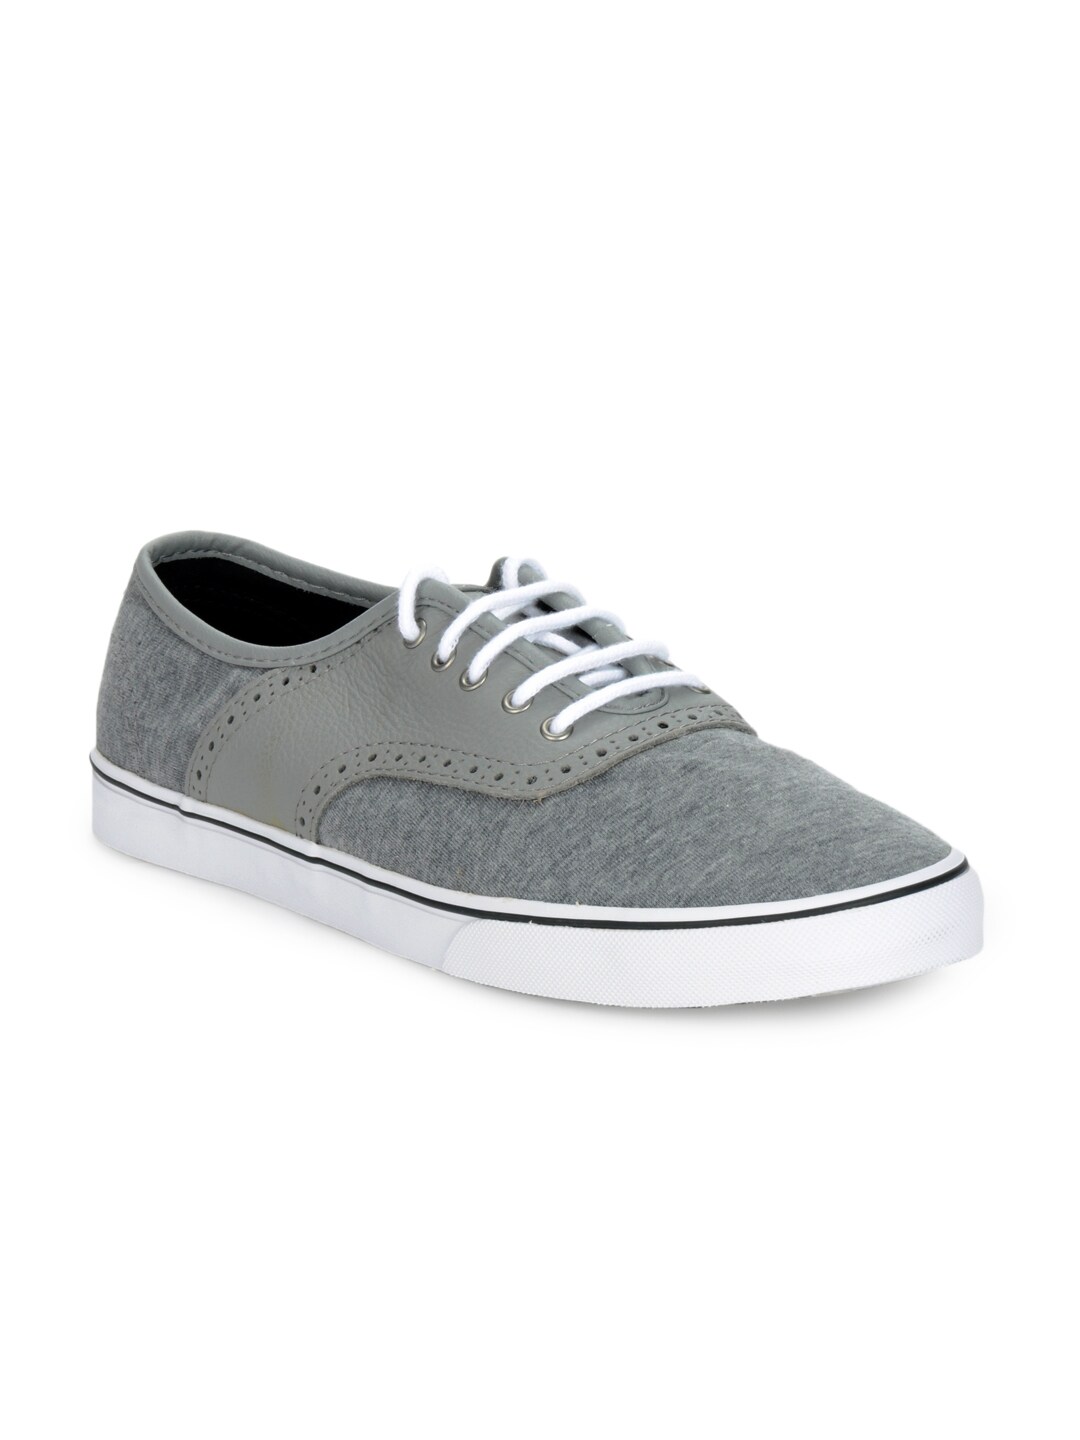 Vans Unisex Grey Shoes